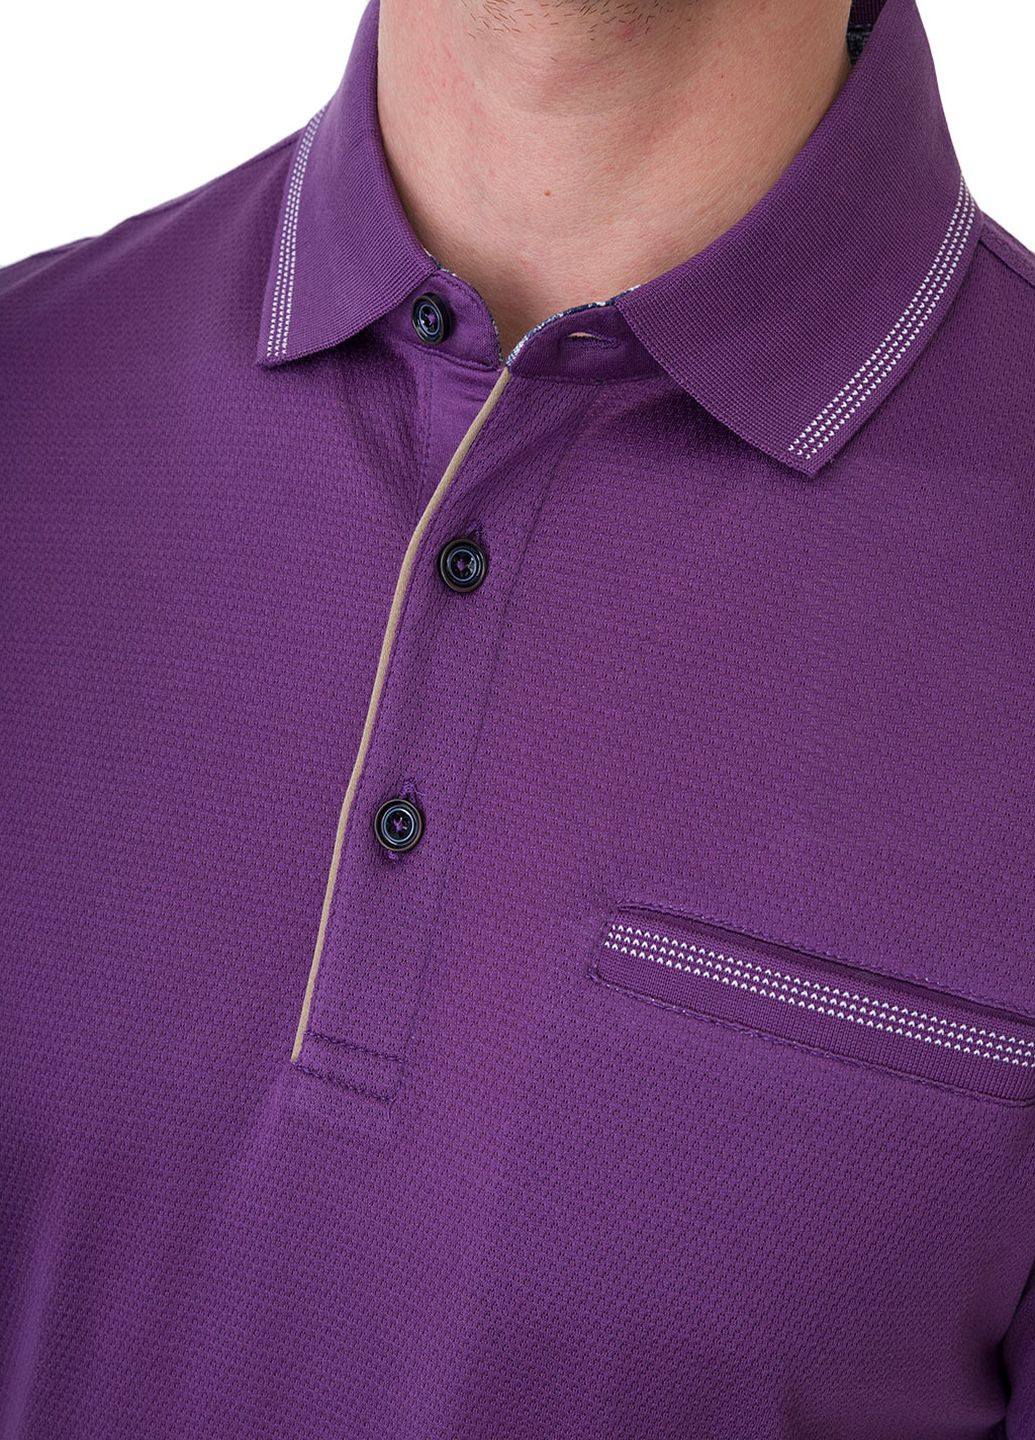 Фиолетовая футболка-поло для мужчин Bugatti однотонная